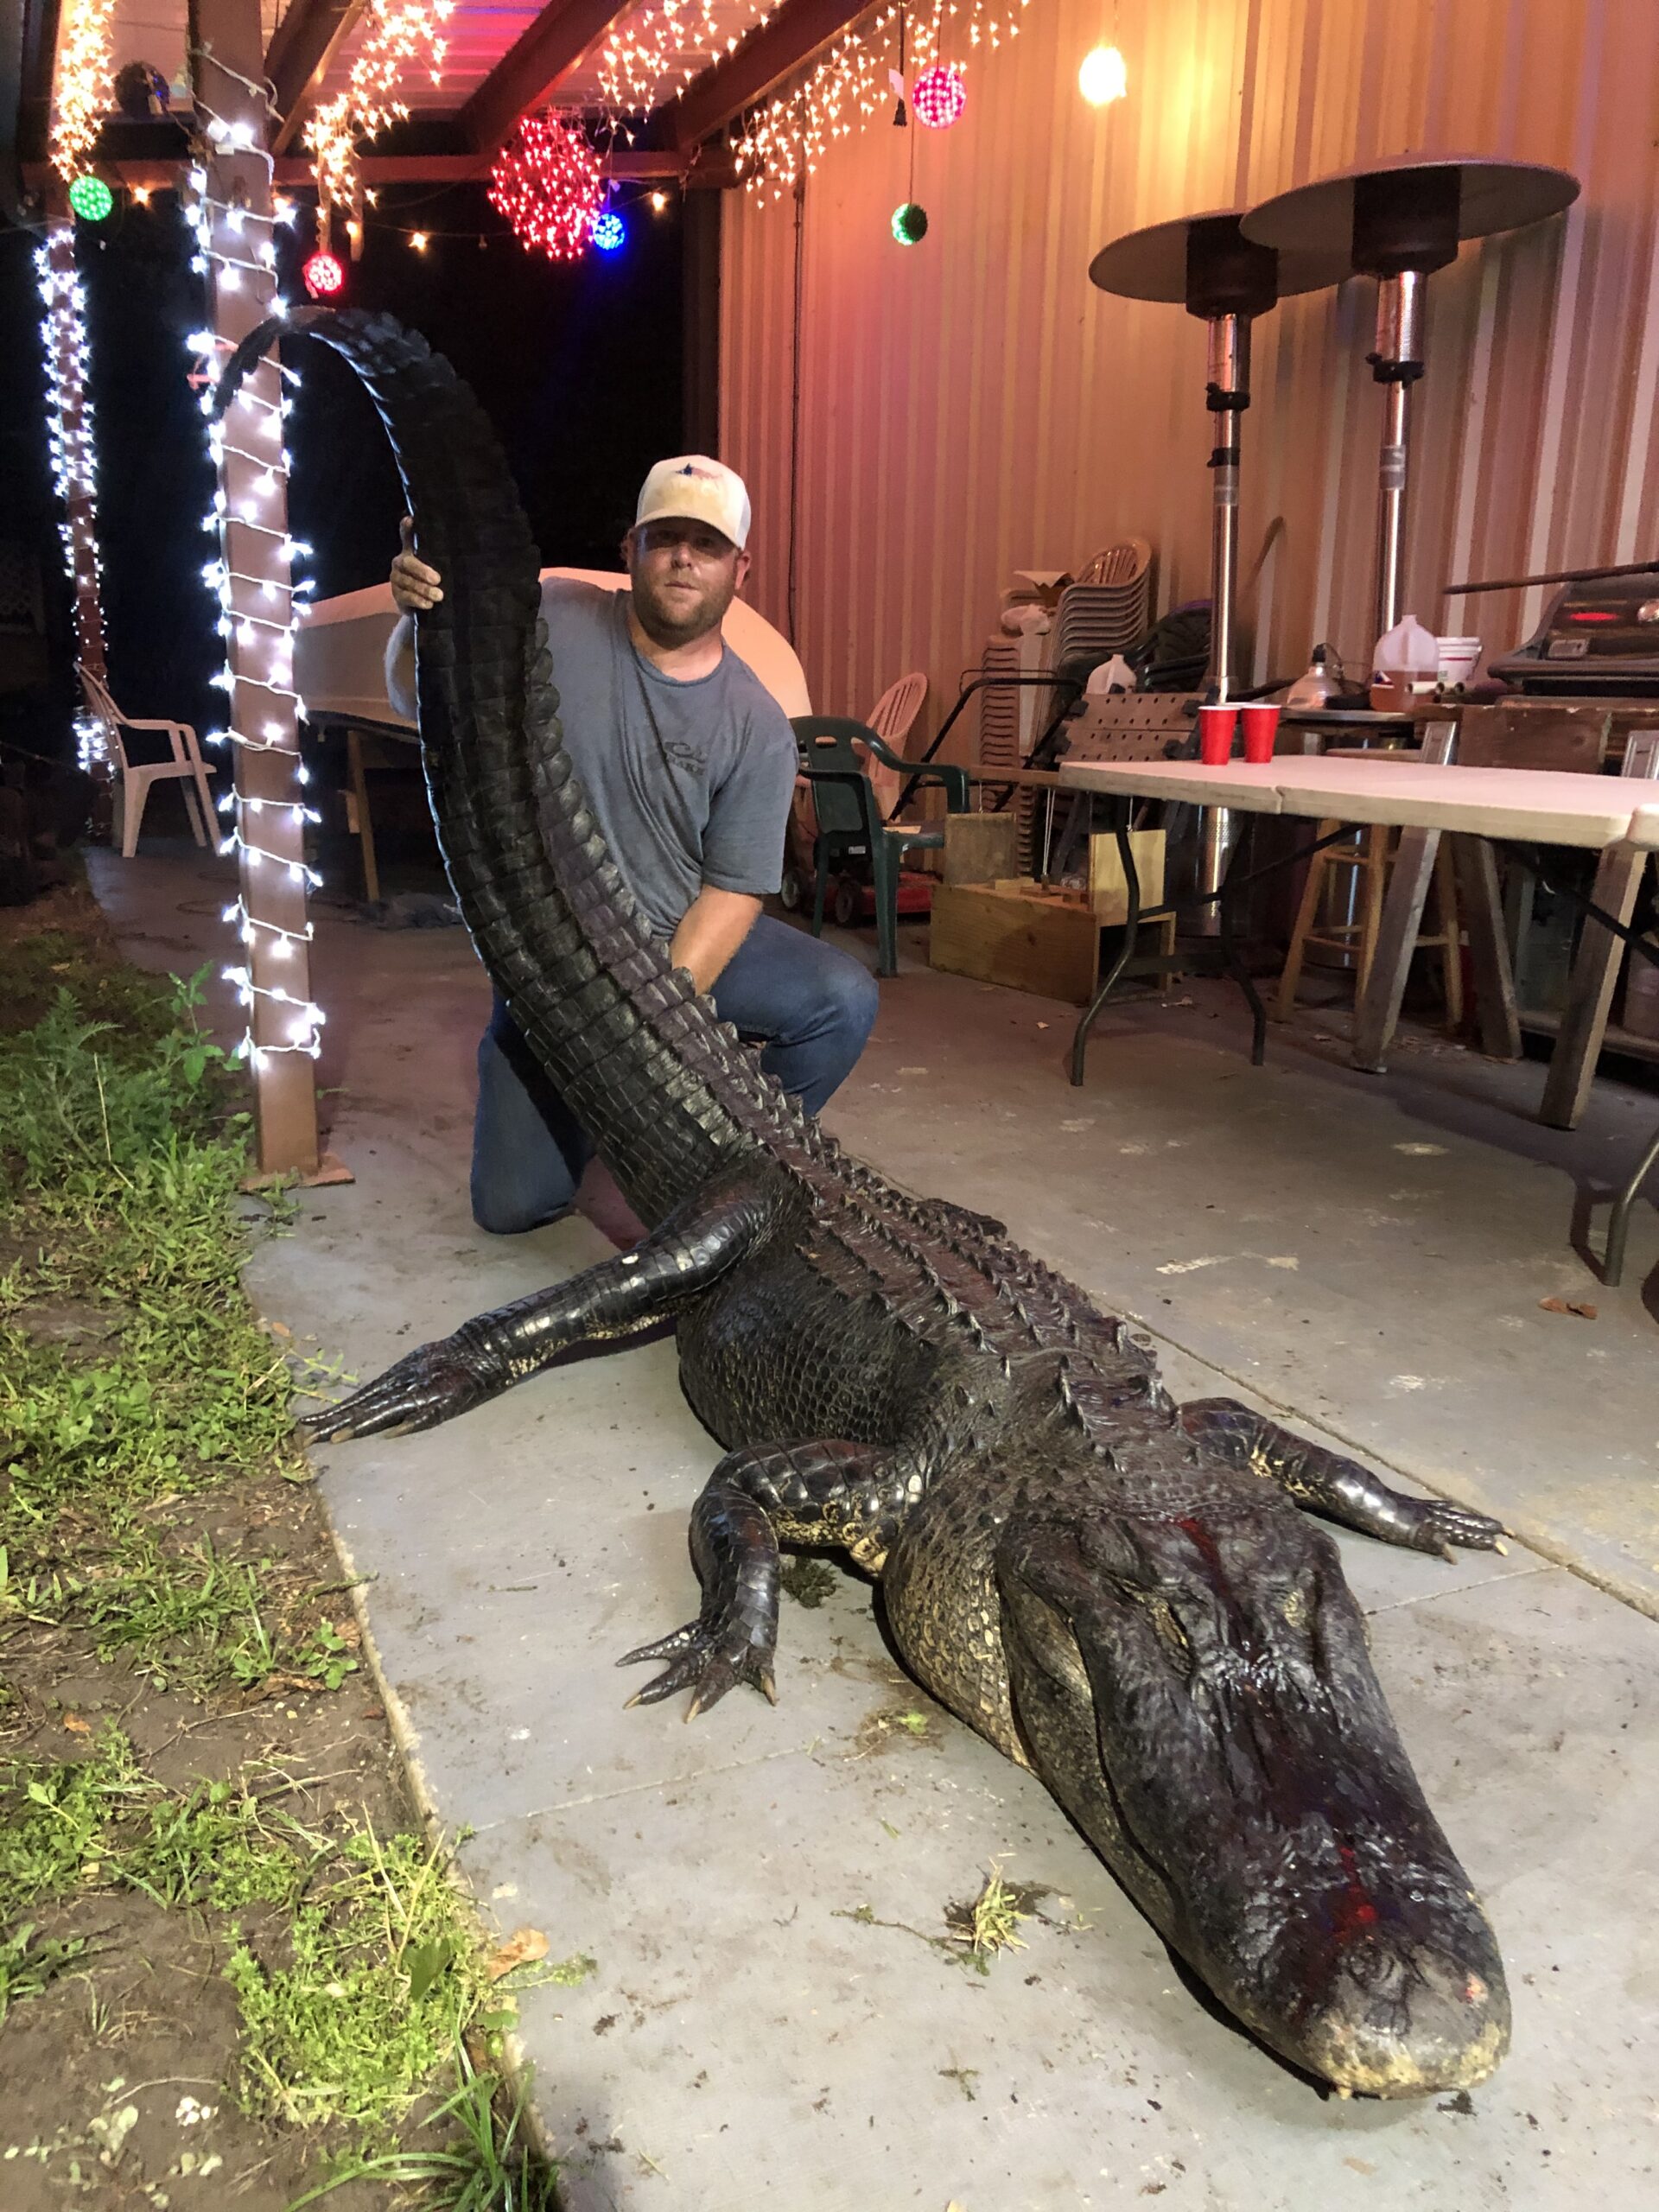 佛罗里达州正试图改变其短吻鳄捕猎规则。